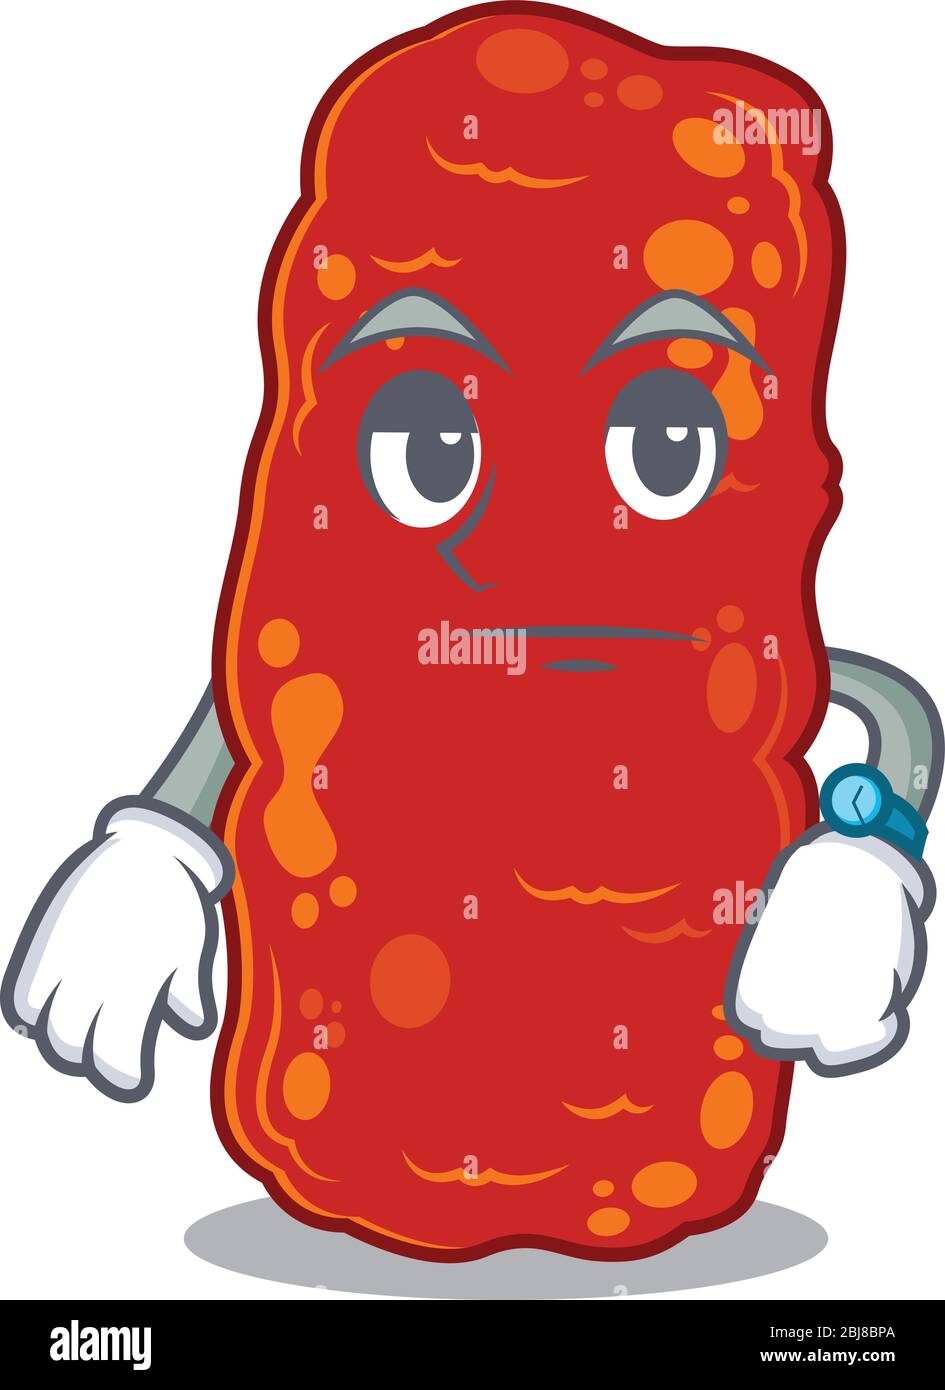 Mascot design of acinetobacter bacteria showing waiting gesture Stock Vector